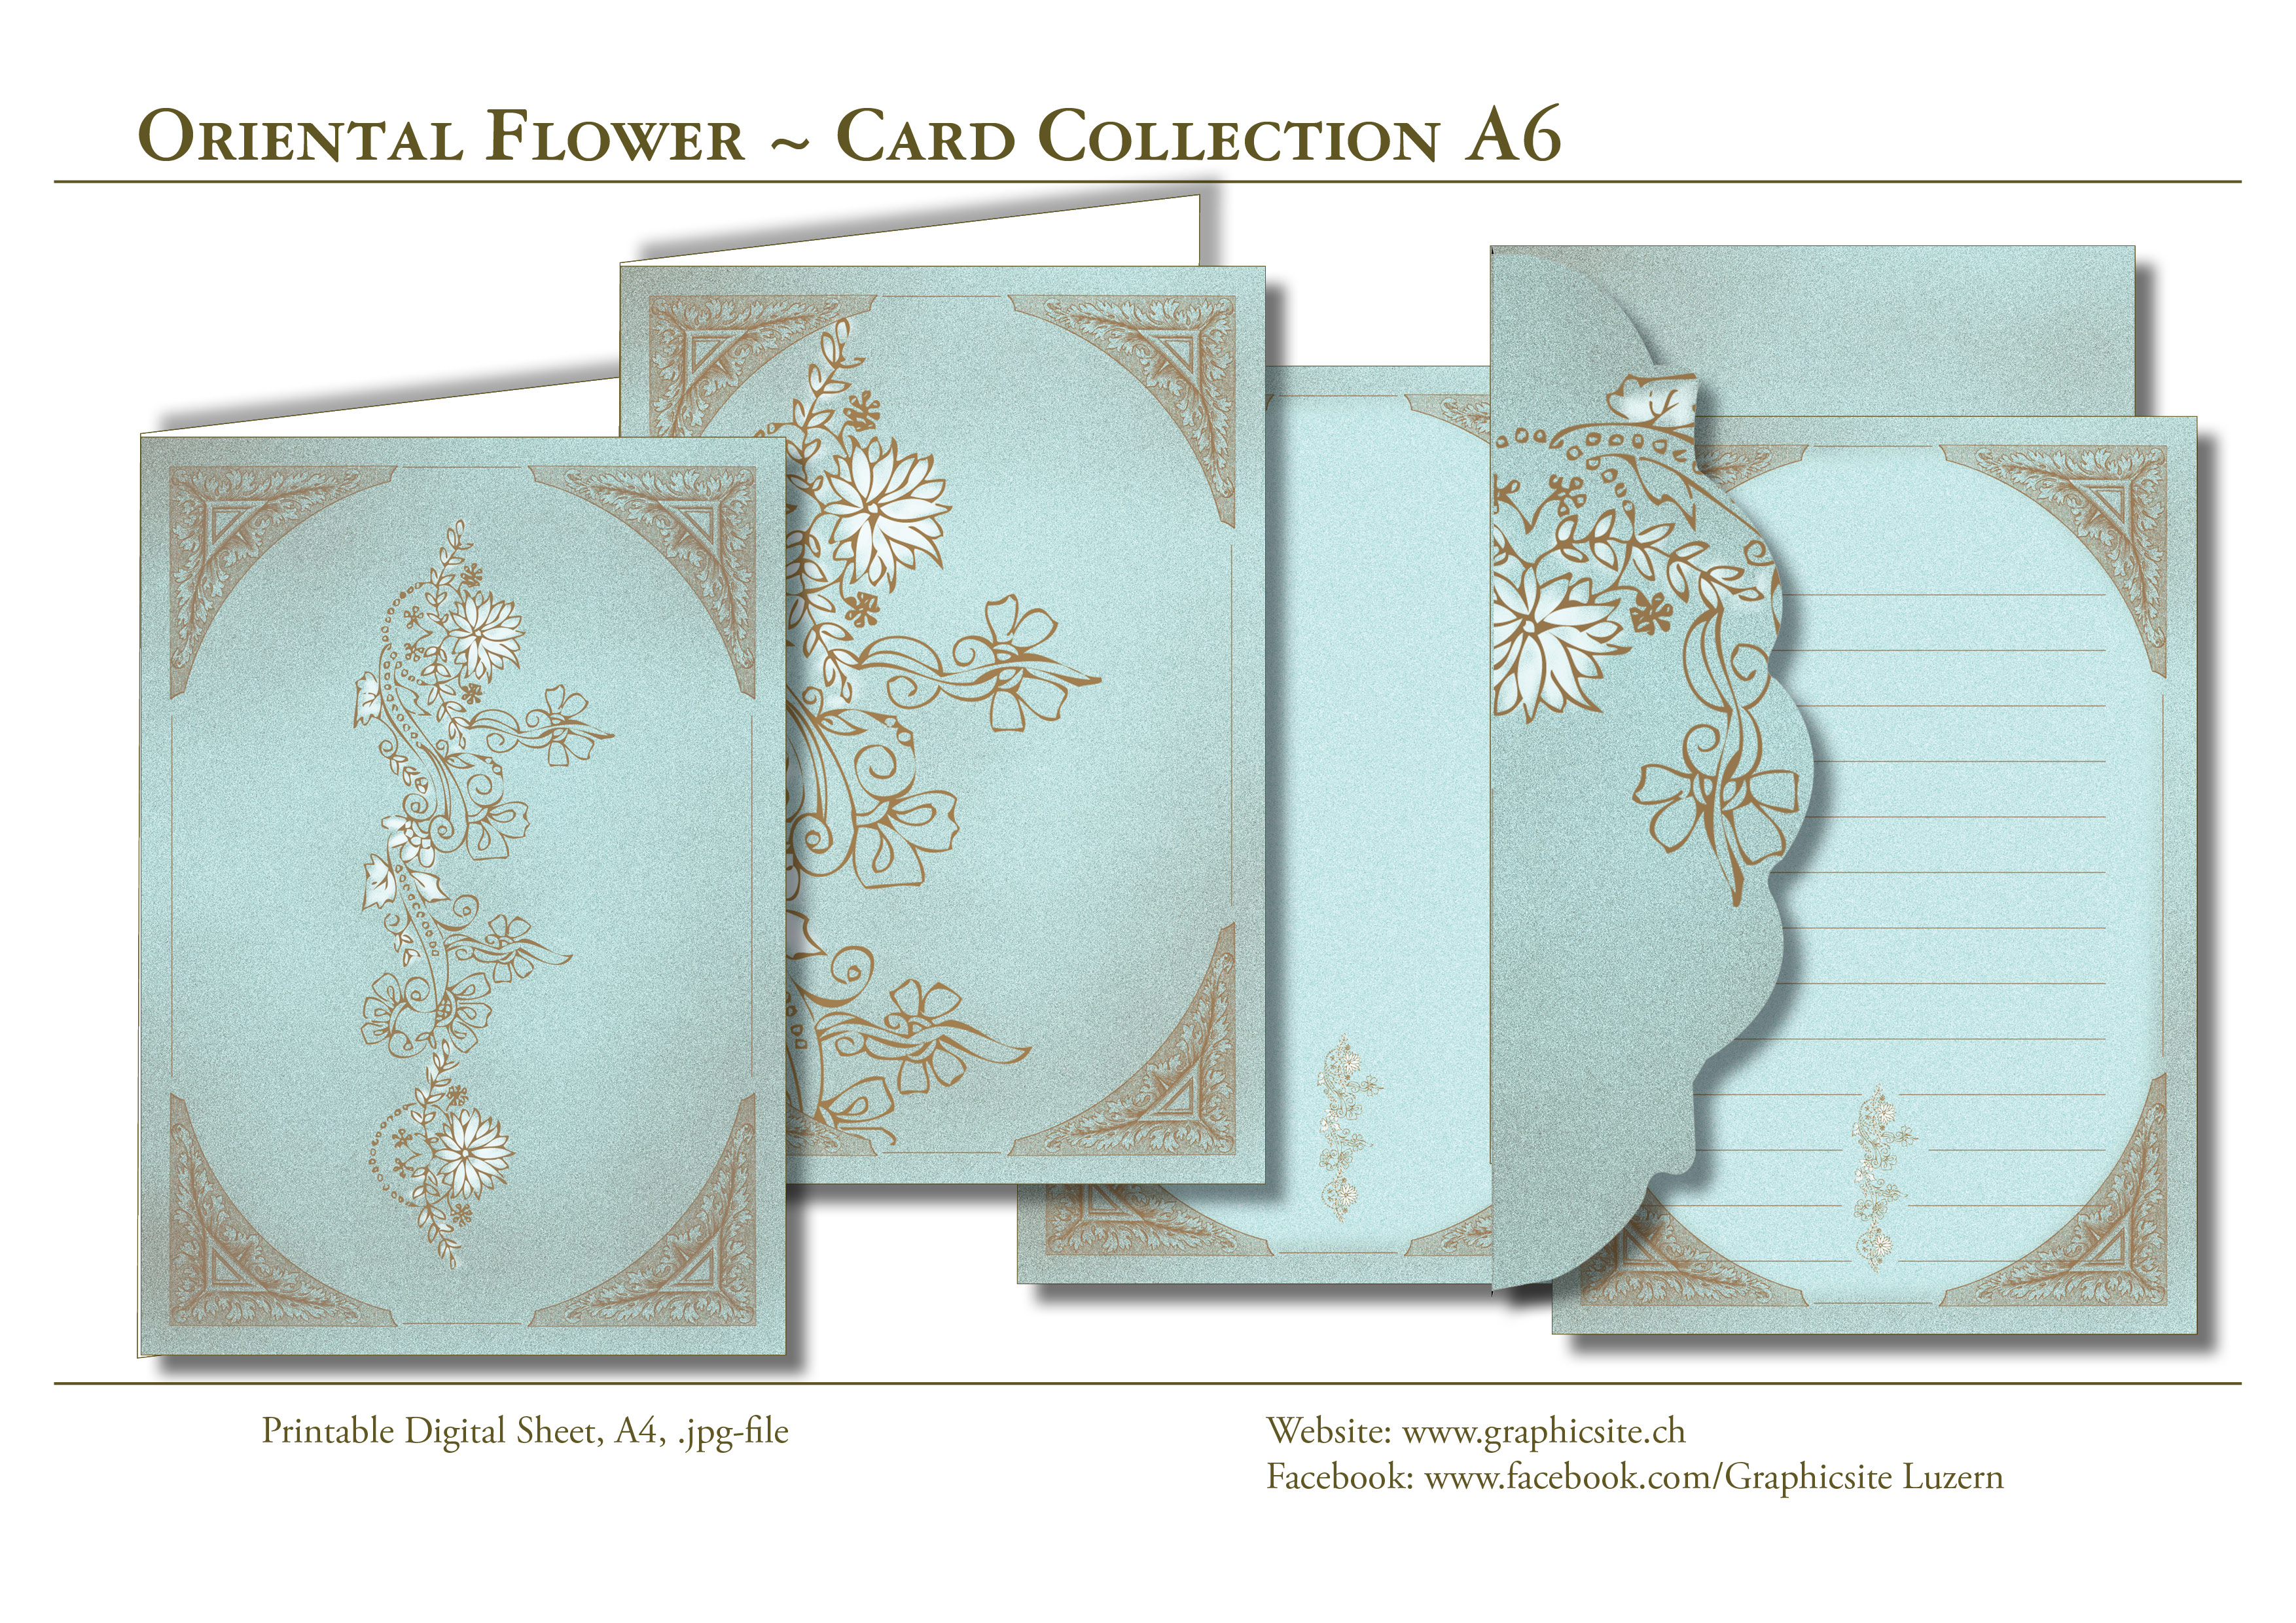 Karten selber drucken -  Blume, Floral, Orientalisch - Karten, Grusskarten, Kuvert, Grafiker Luzern, Schweiz